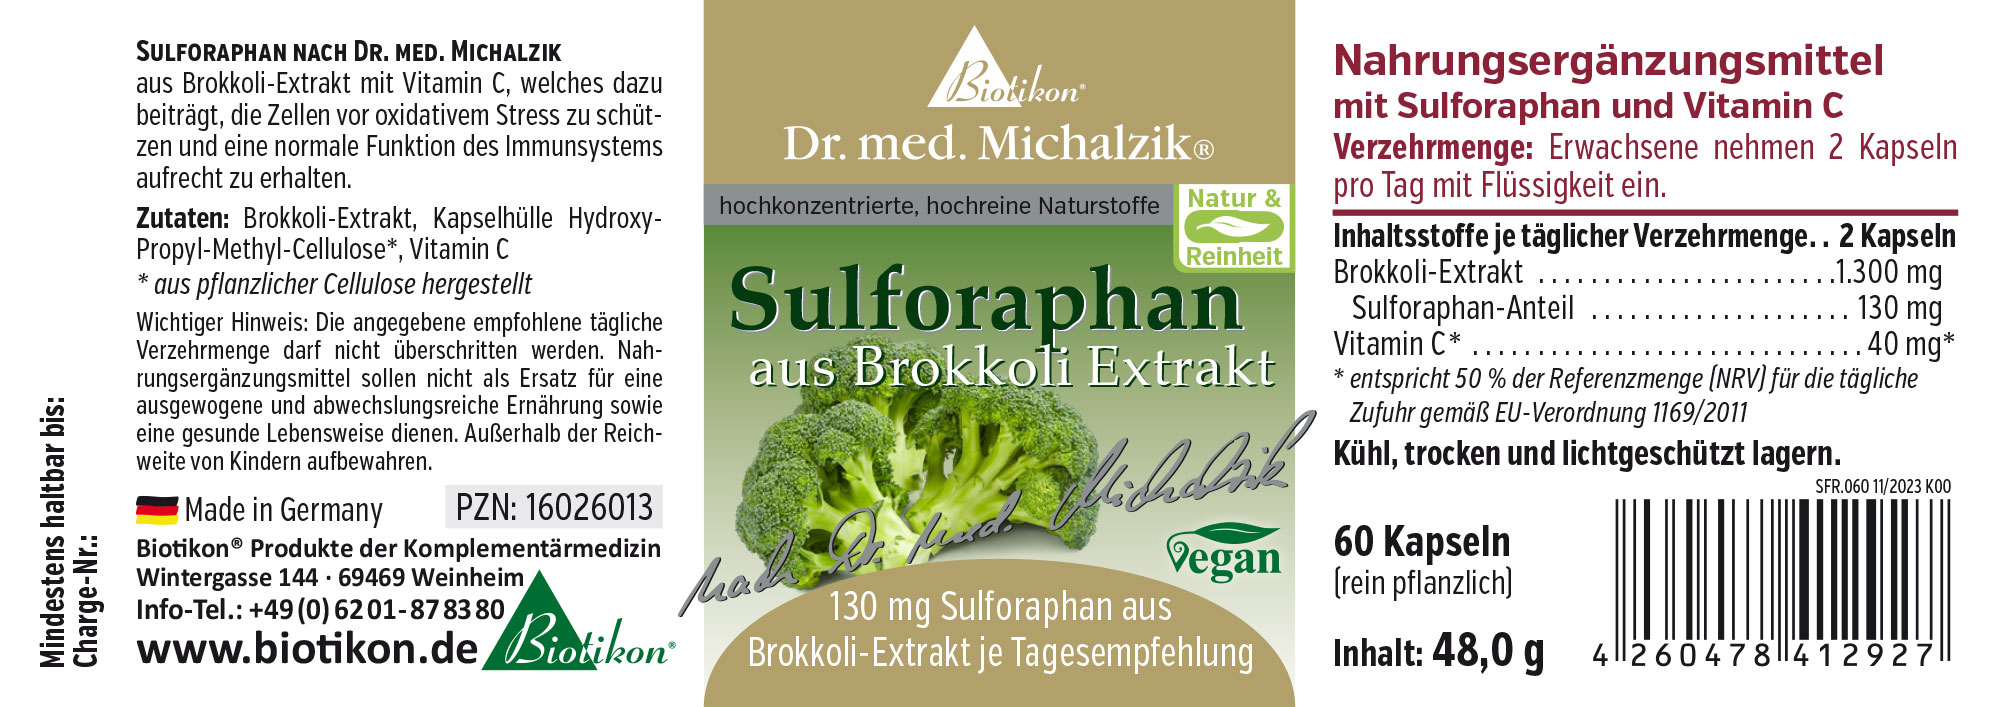 Sulforafano dall'estratto di broccoli